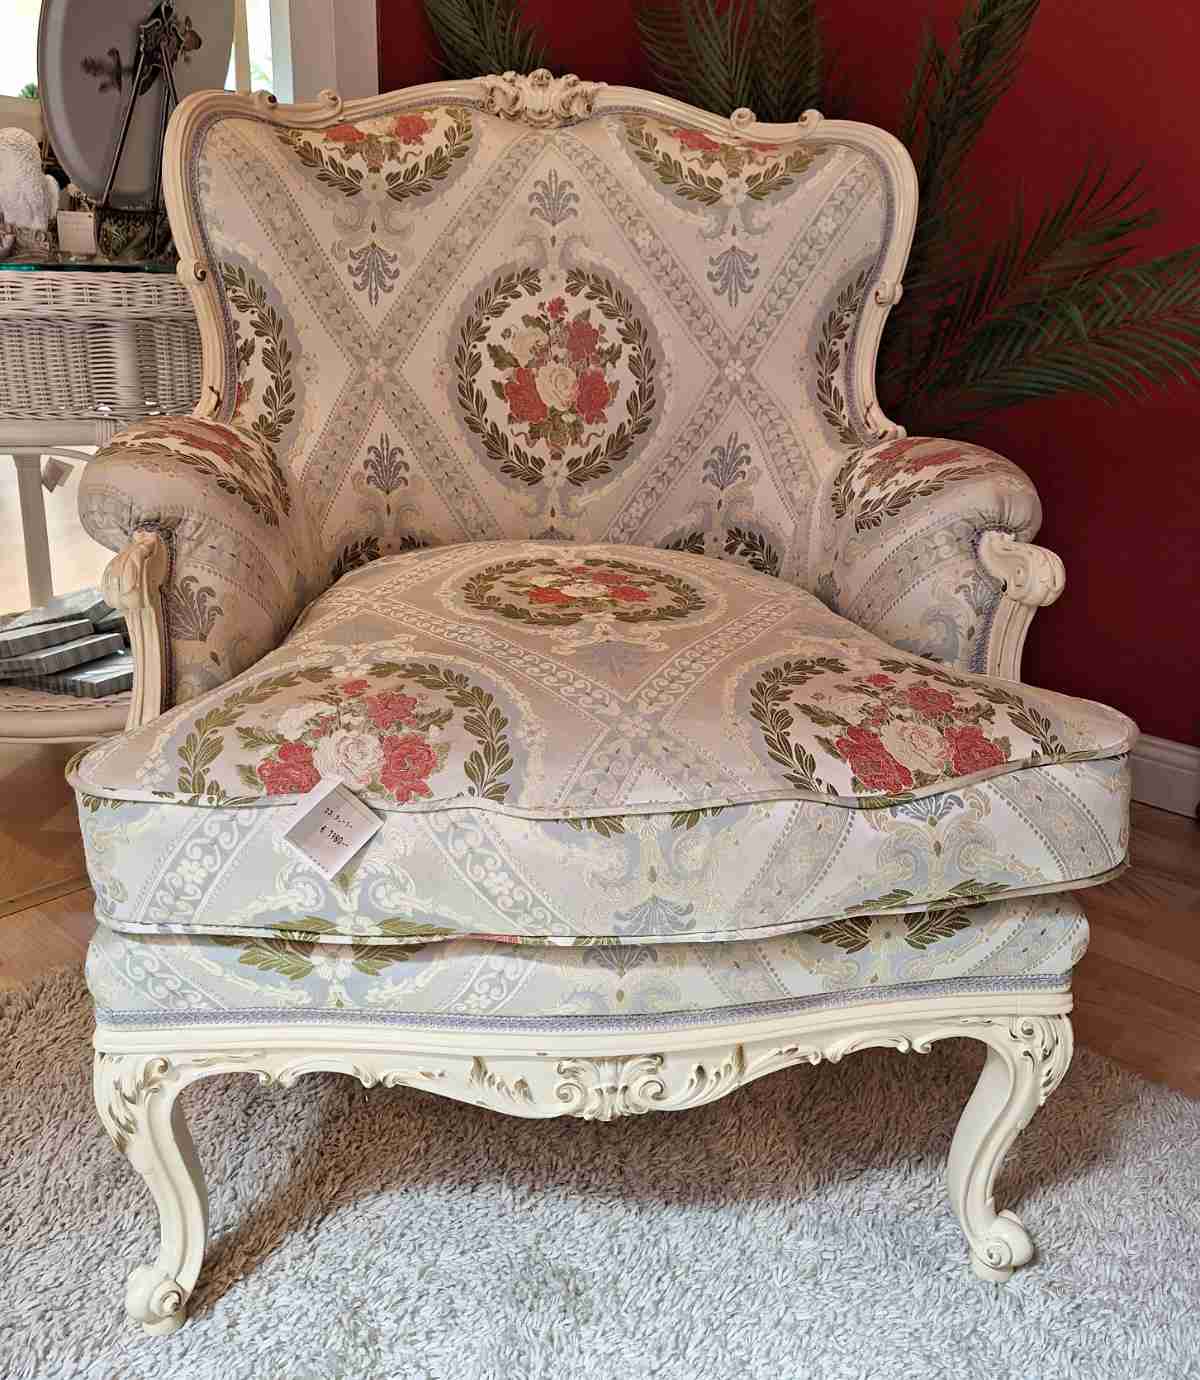 Cremefarbener Sessel, gebraucht, mit Ornamentstoff und Goldverzierungen, zierlich, Frontalansicht.